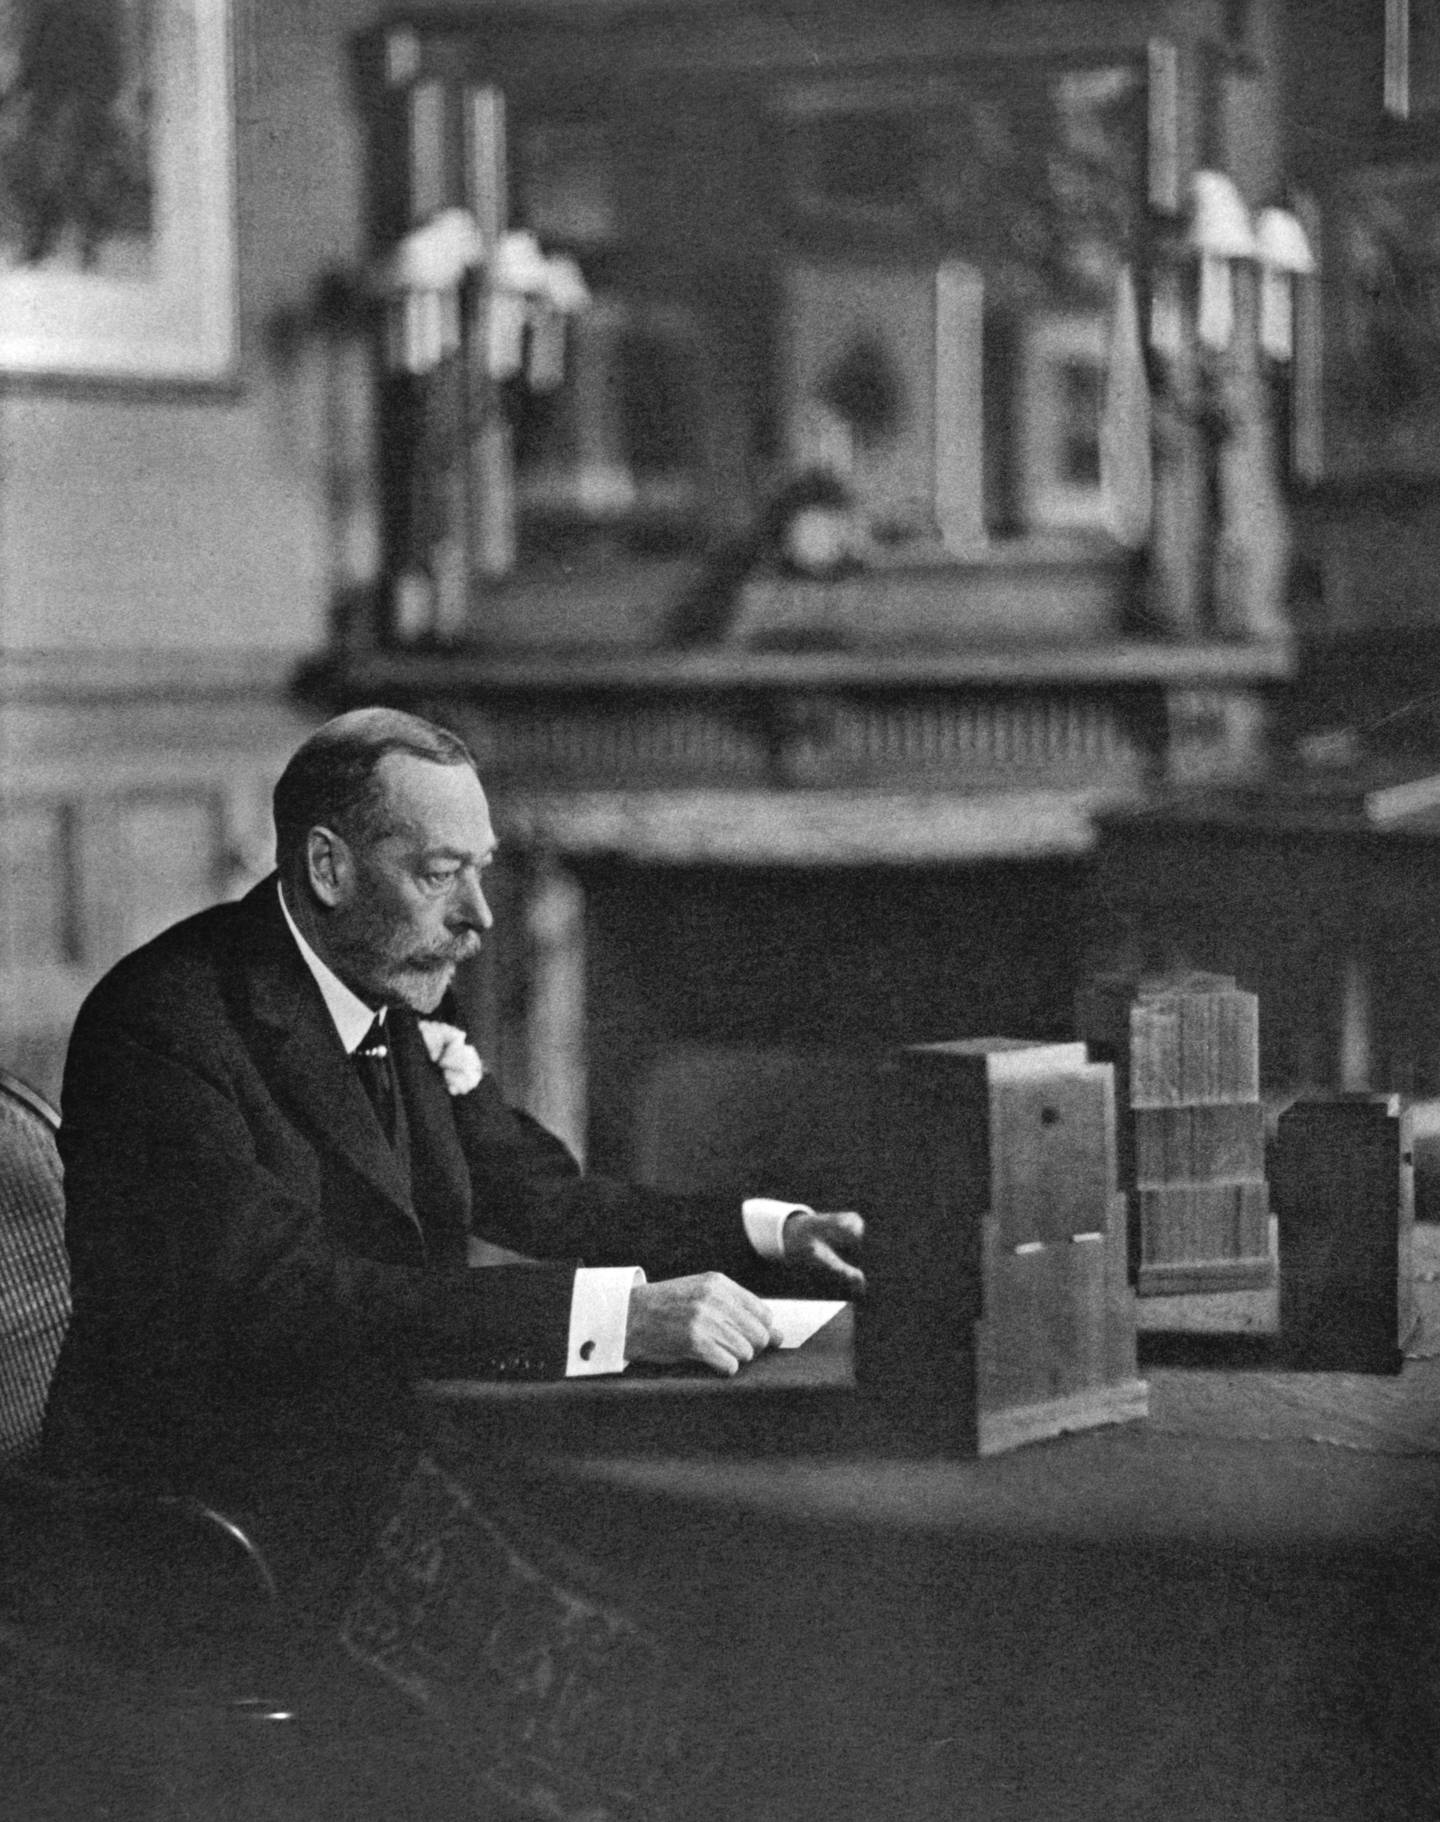 Le roi George V donnant son émission de radio de Noël à Sandringham en 1934. Getty Images